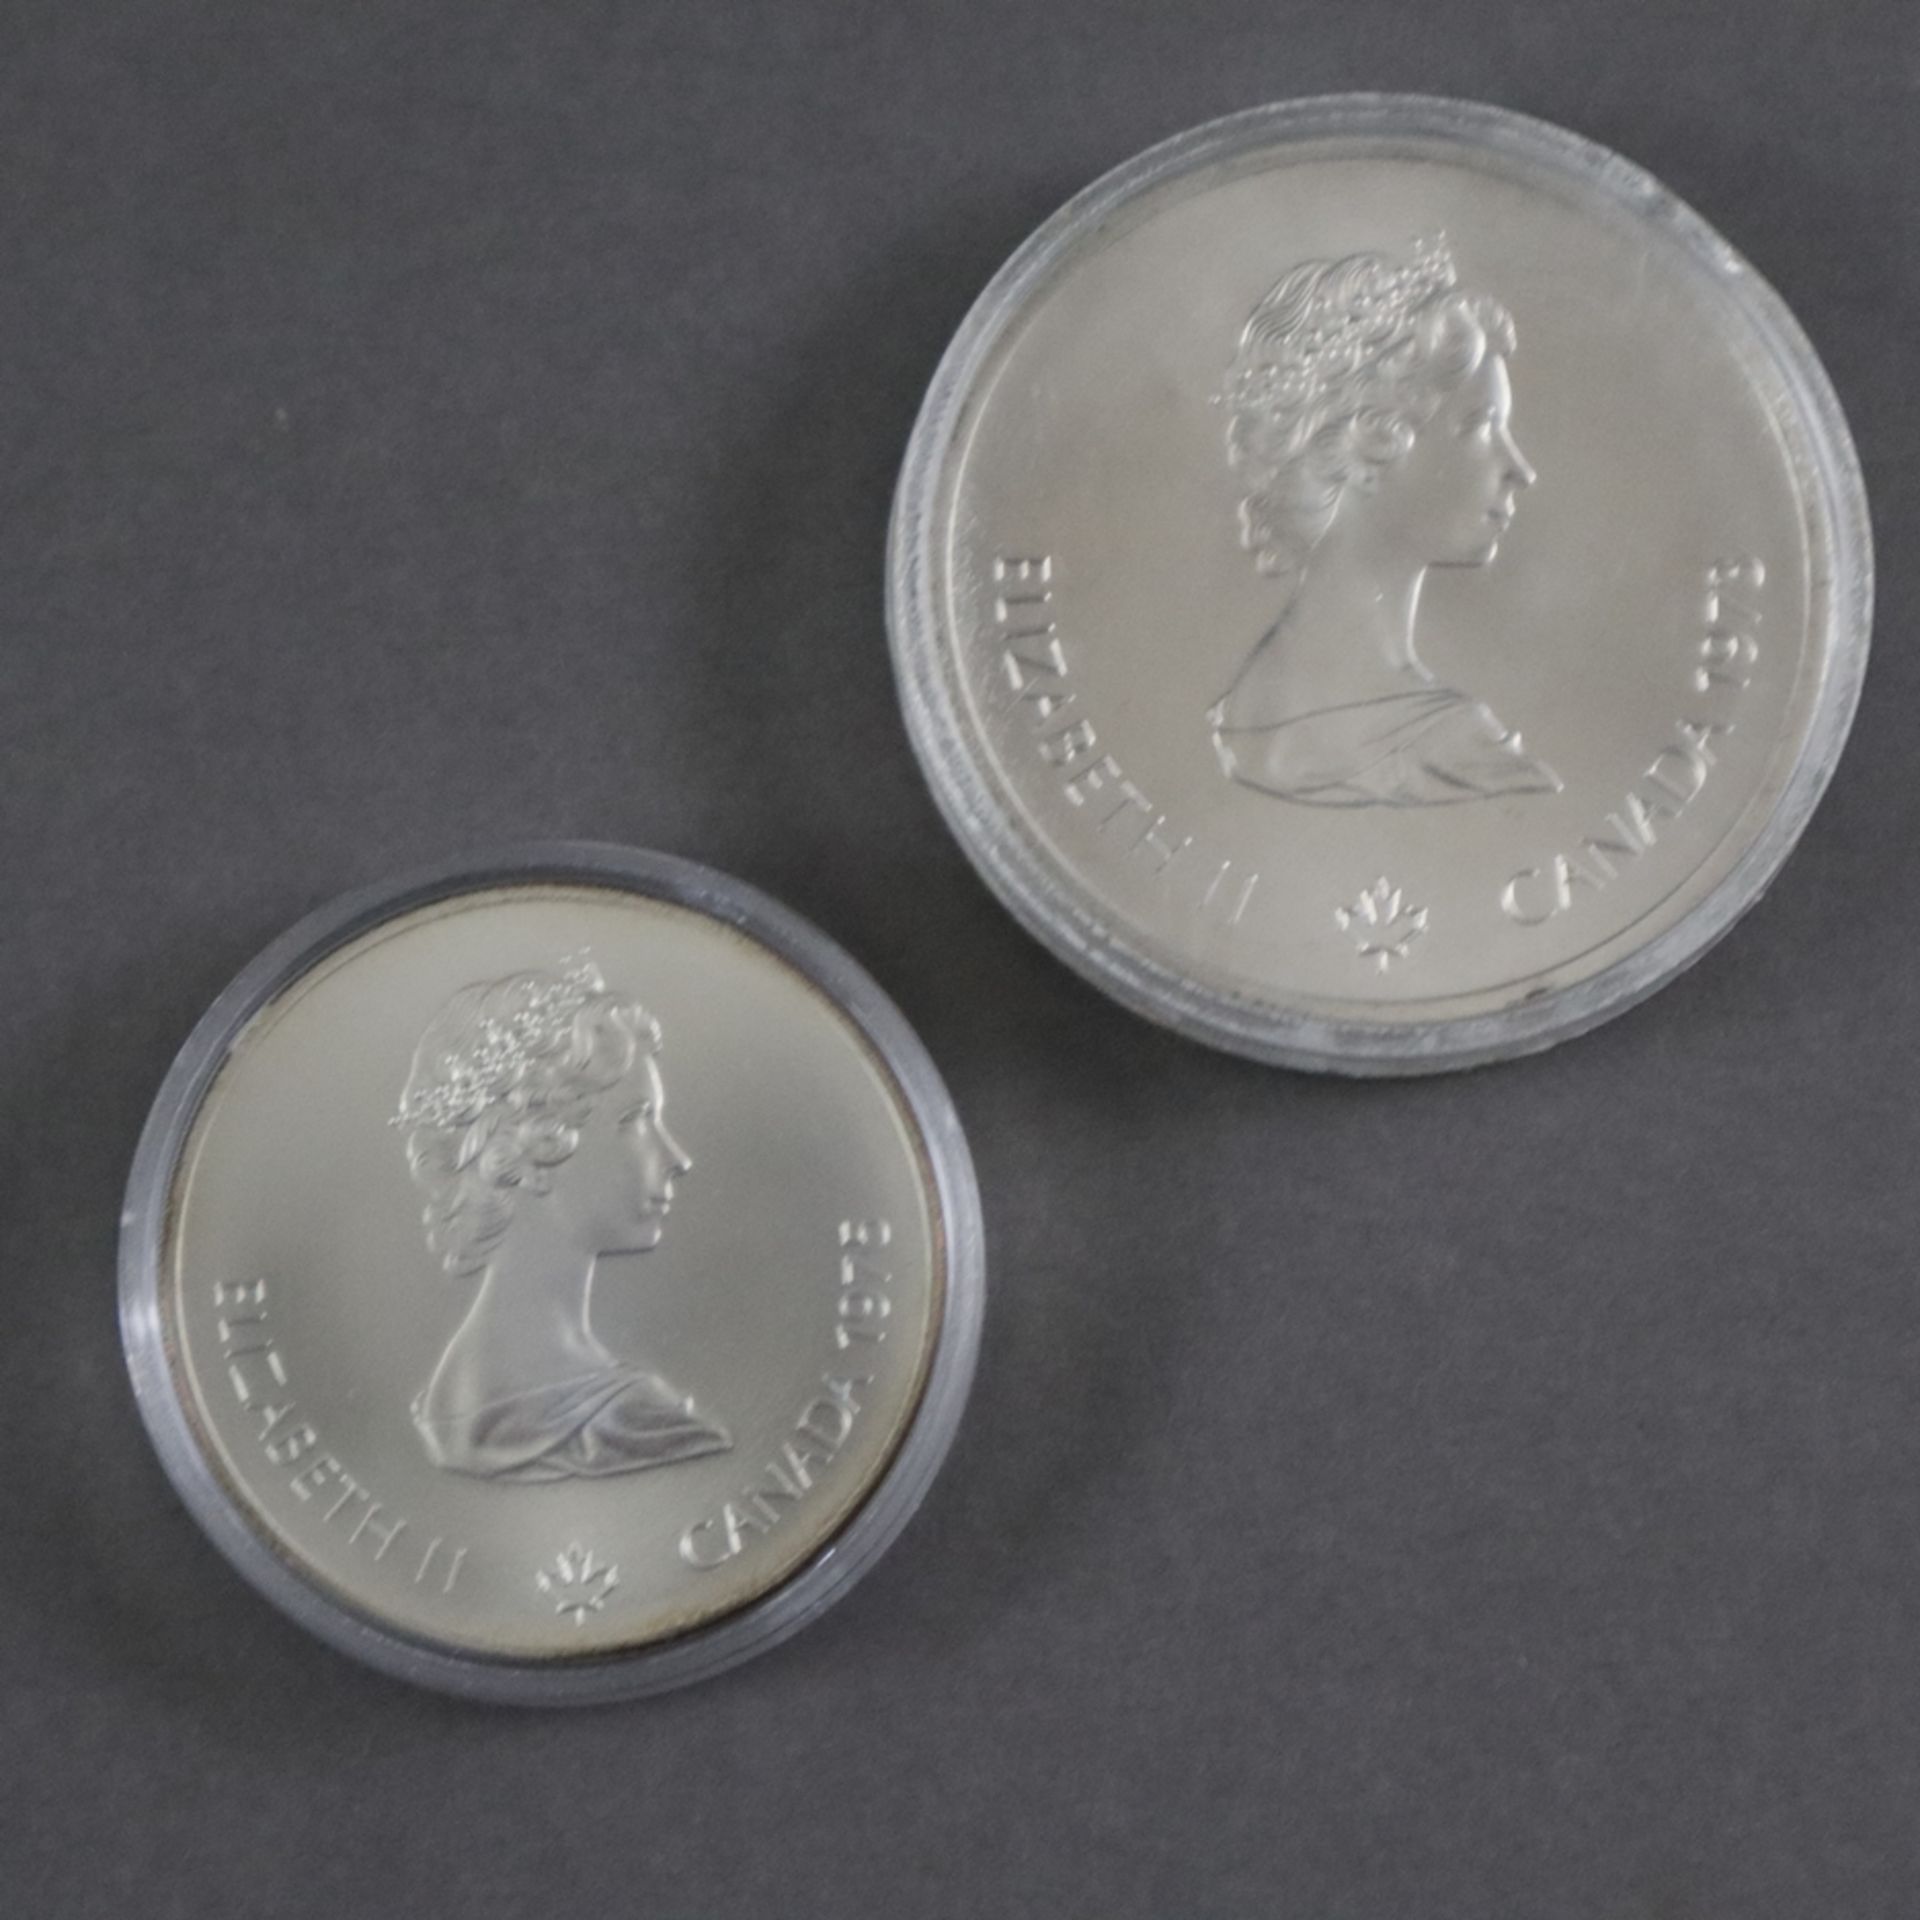 Olympia-Münzenset - 925/000 Silber, Olympische Spiele 1976 in Montreal, Kanada, komplette Serie von - Image 7 of 7